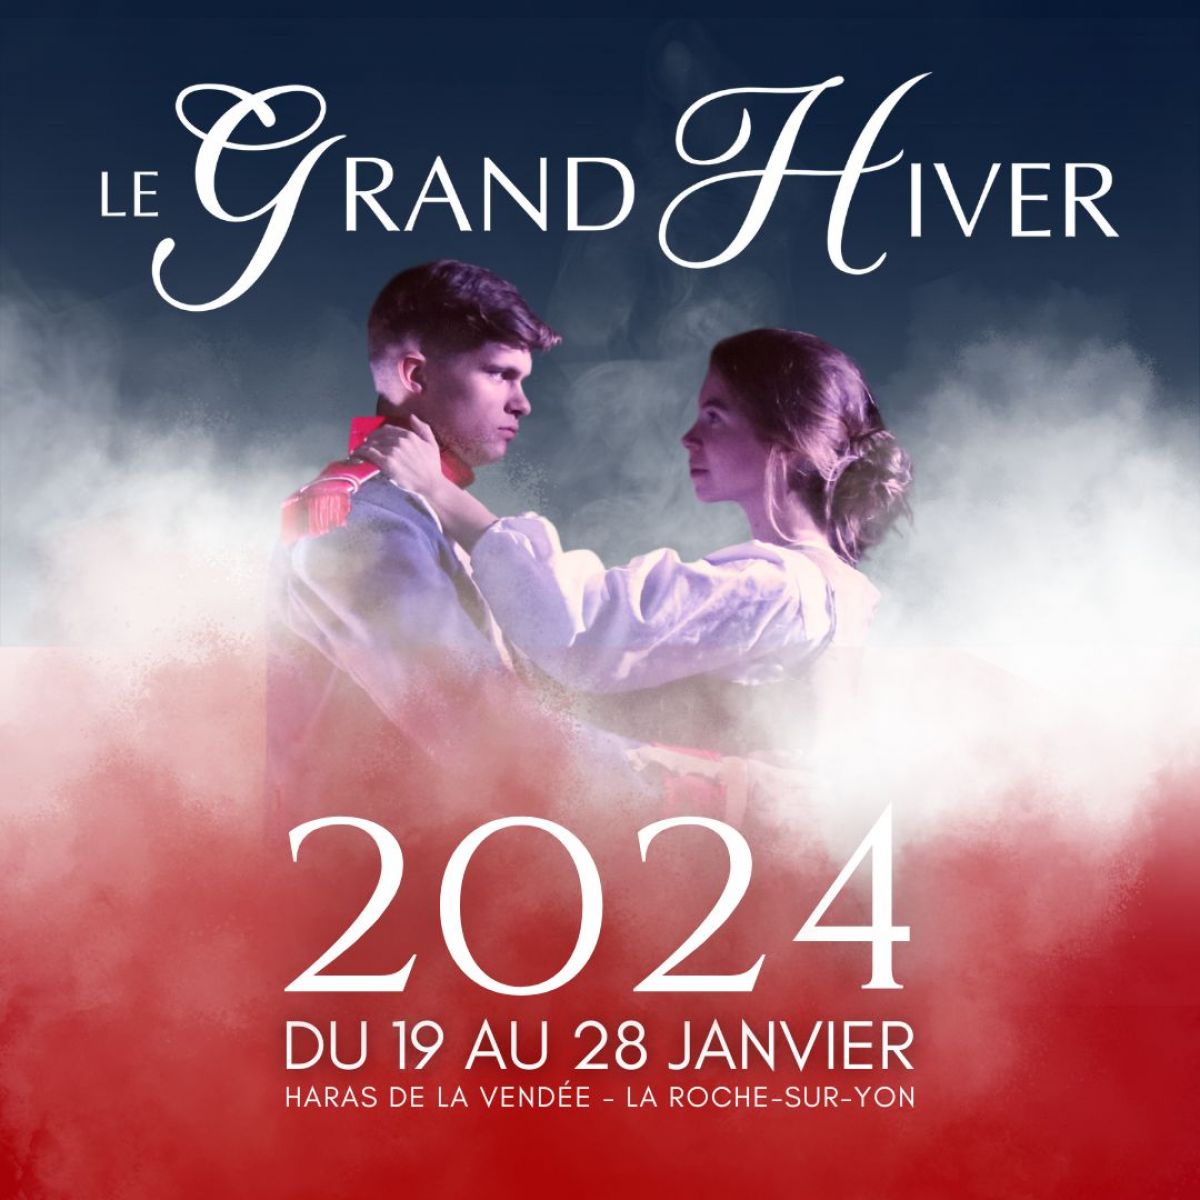 Le Grand Hiver 2024